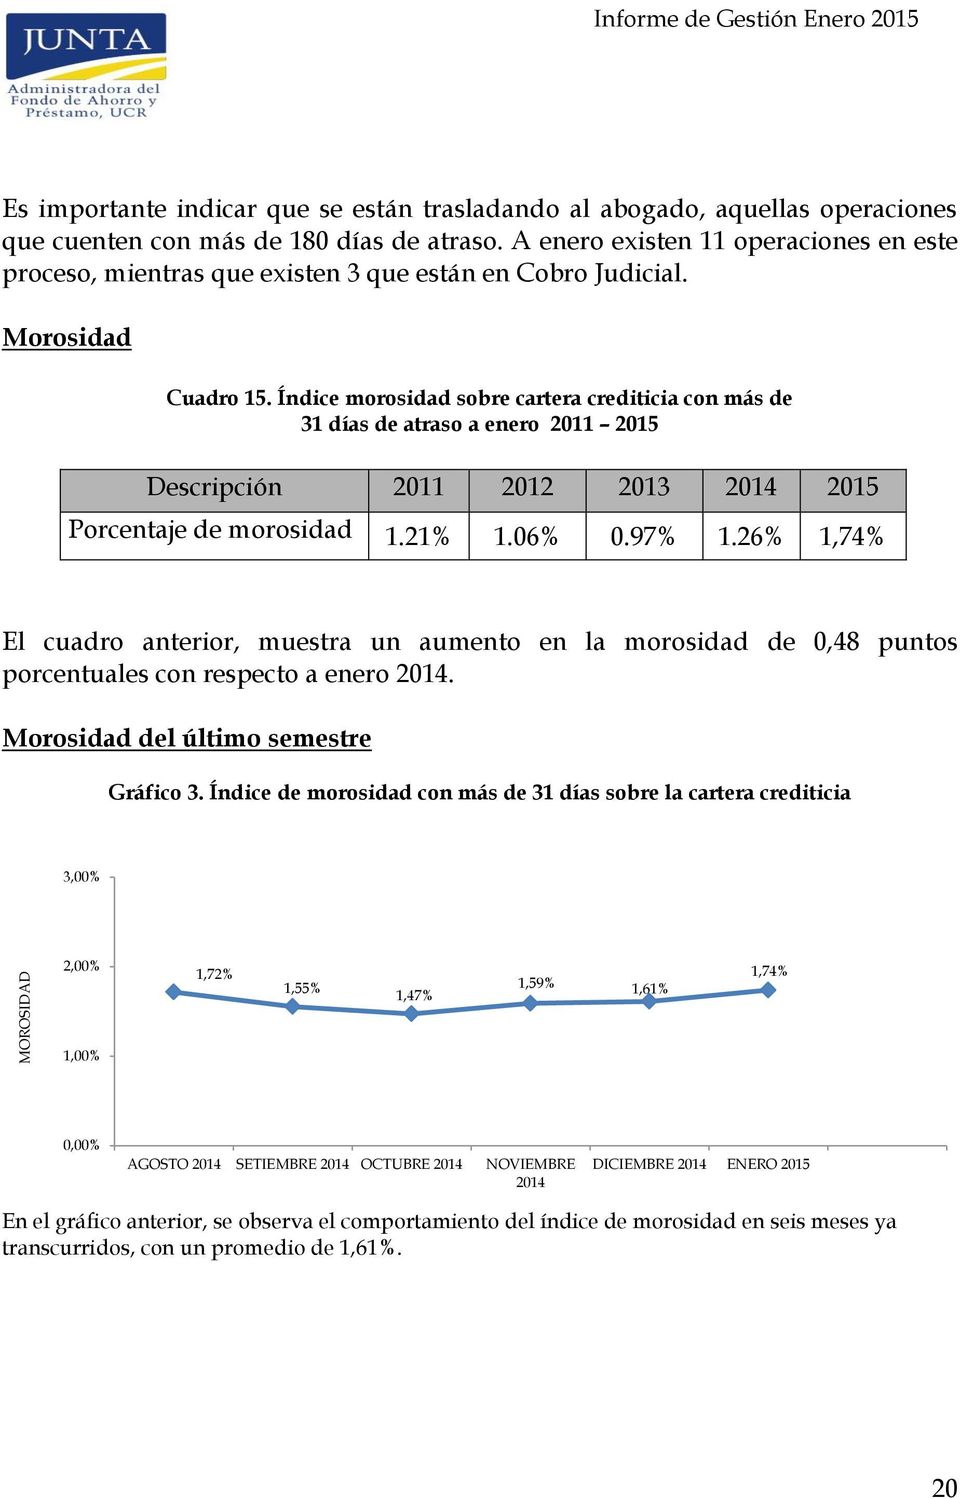 Índic morosidad sobr cartra crditicia con más d 31 días d atraso a nro 2011 2015 Dscripción 2011 2012 2013 2014 2015 Porcntaj d morosidad 1.21% 1.06% 0.97% 1.